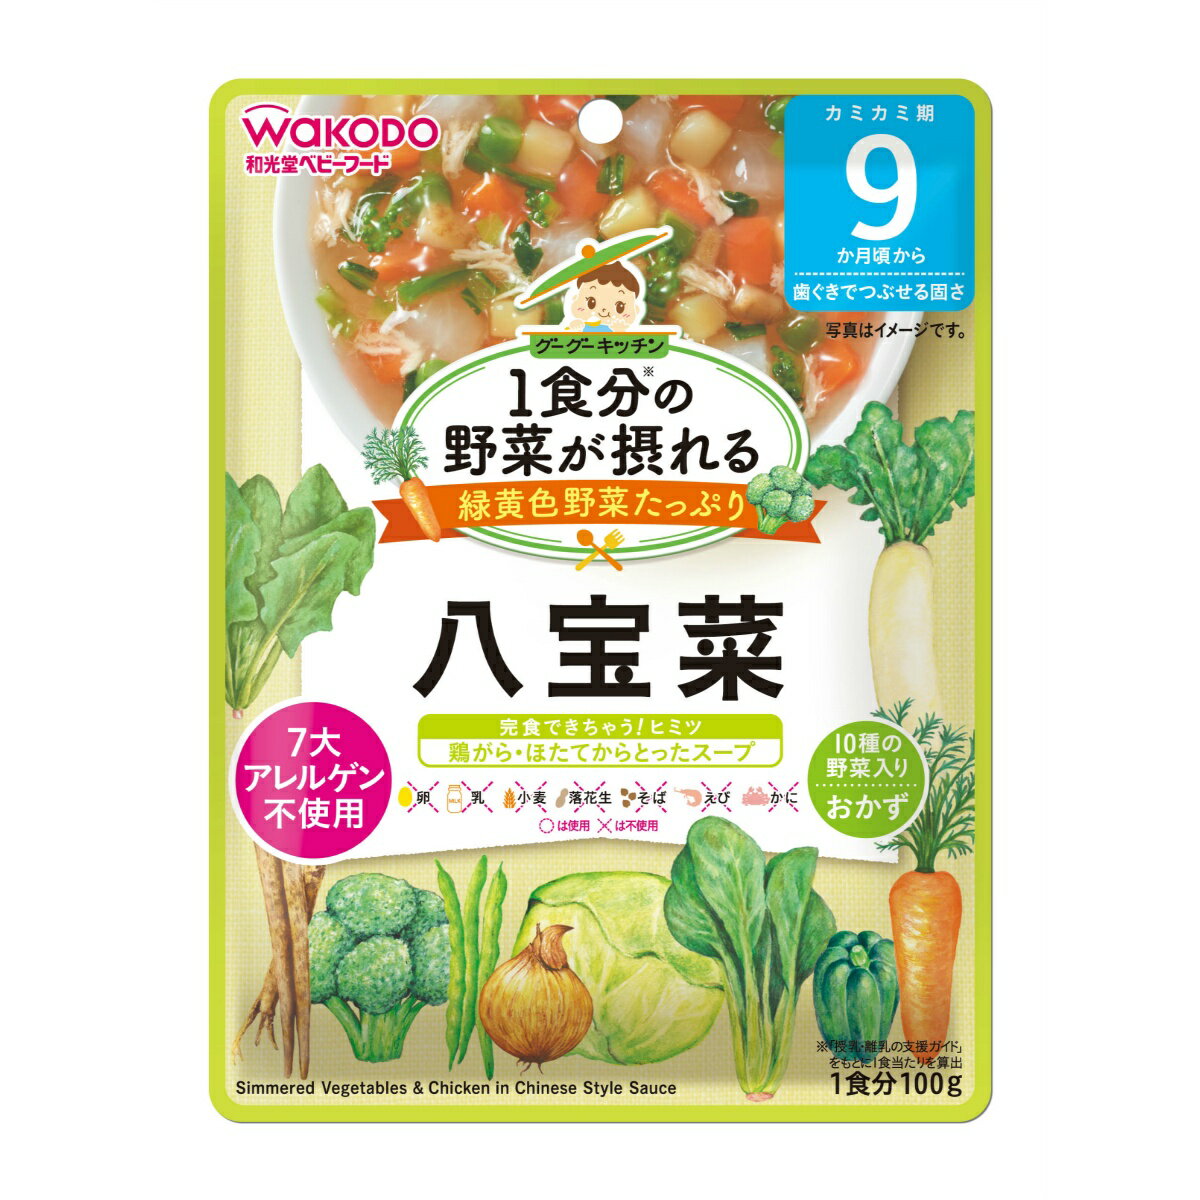 和光堂 グーグーキッチン 1食分の野菜が摂れる 八宝菜 100G